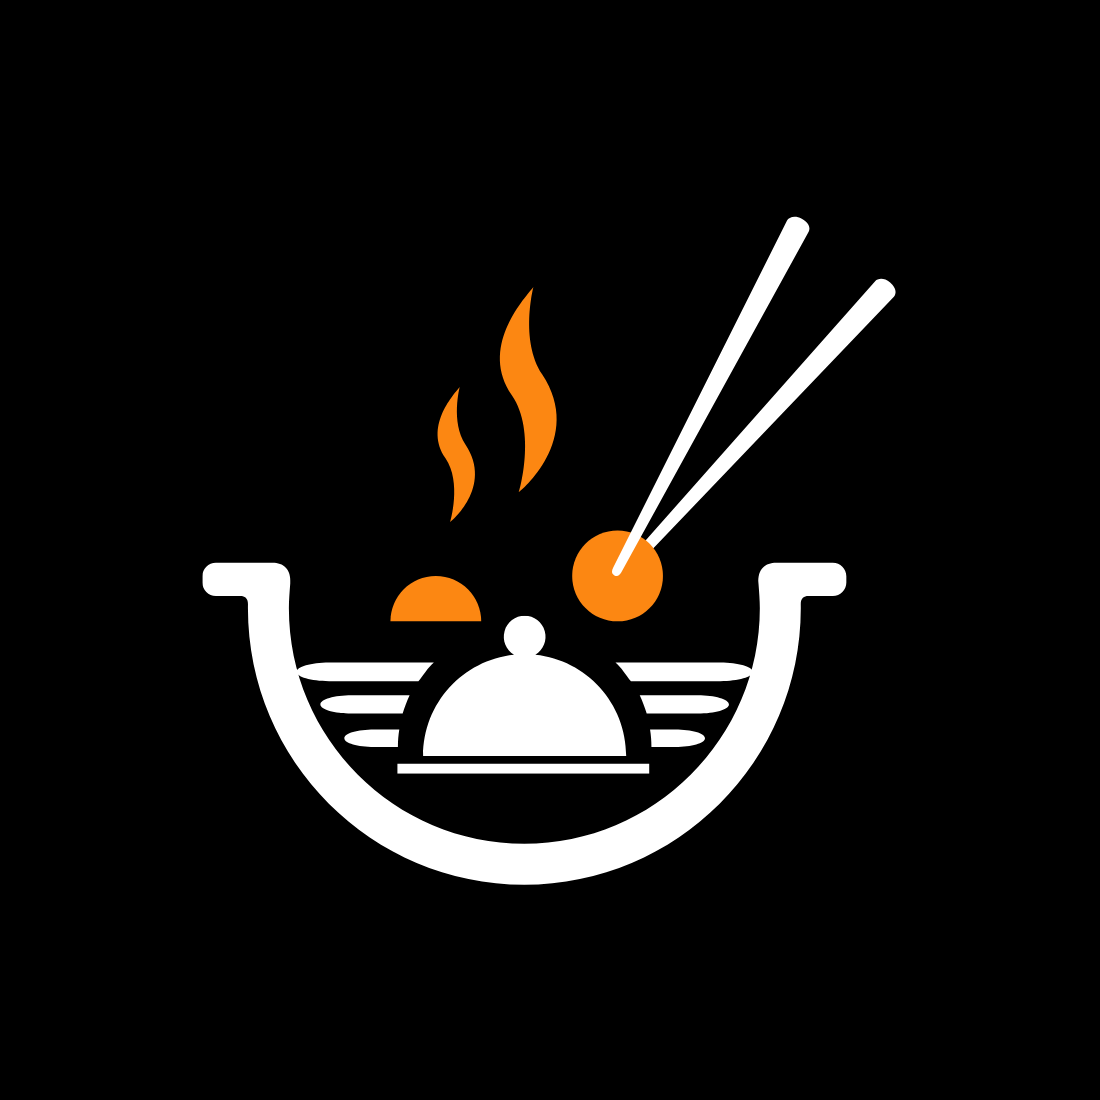 Logo Restaurant Shipping for Any Company main cover.